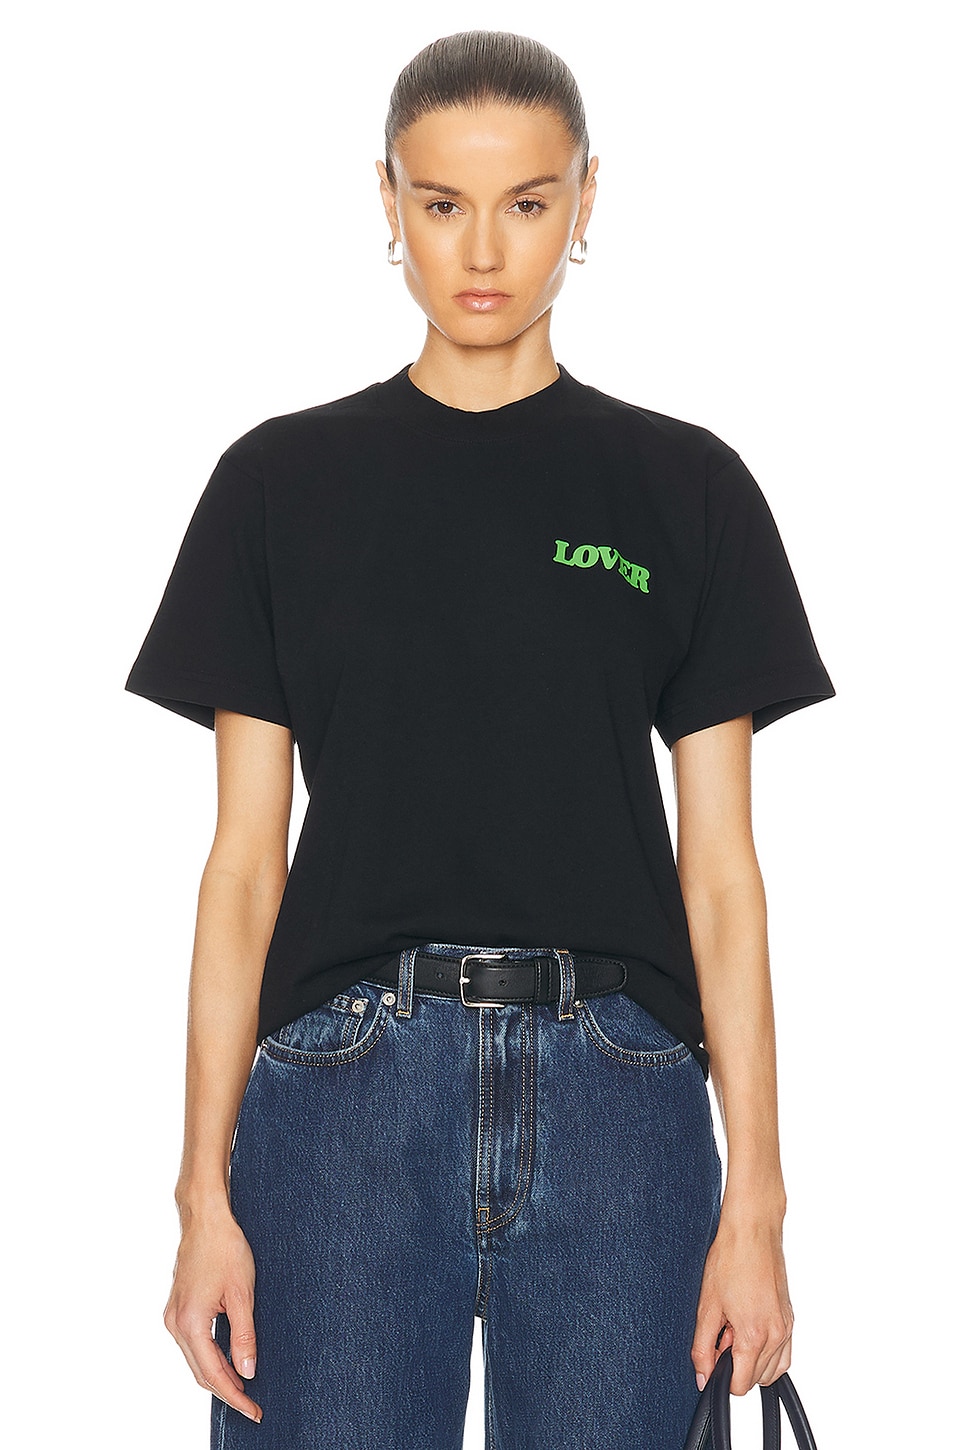 Lover Side Logo Shirt in Black